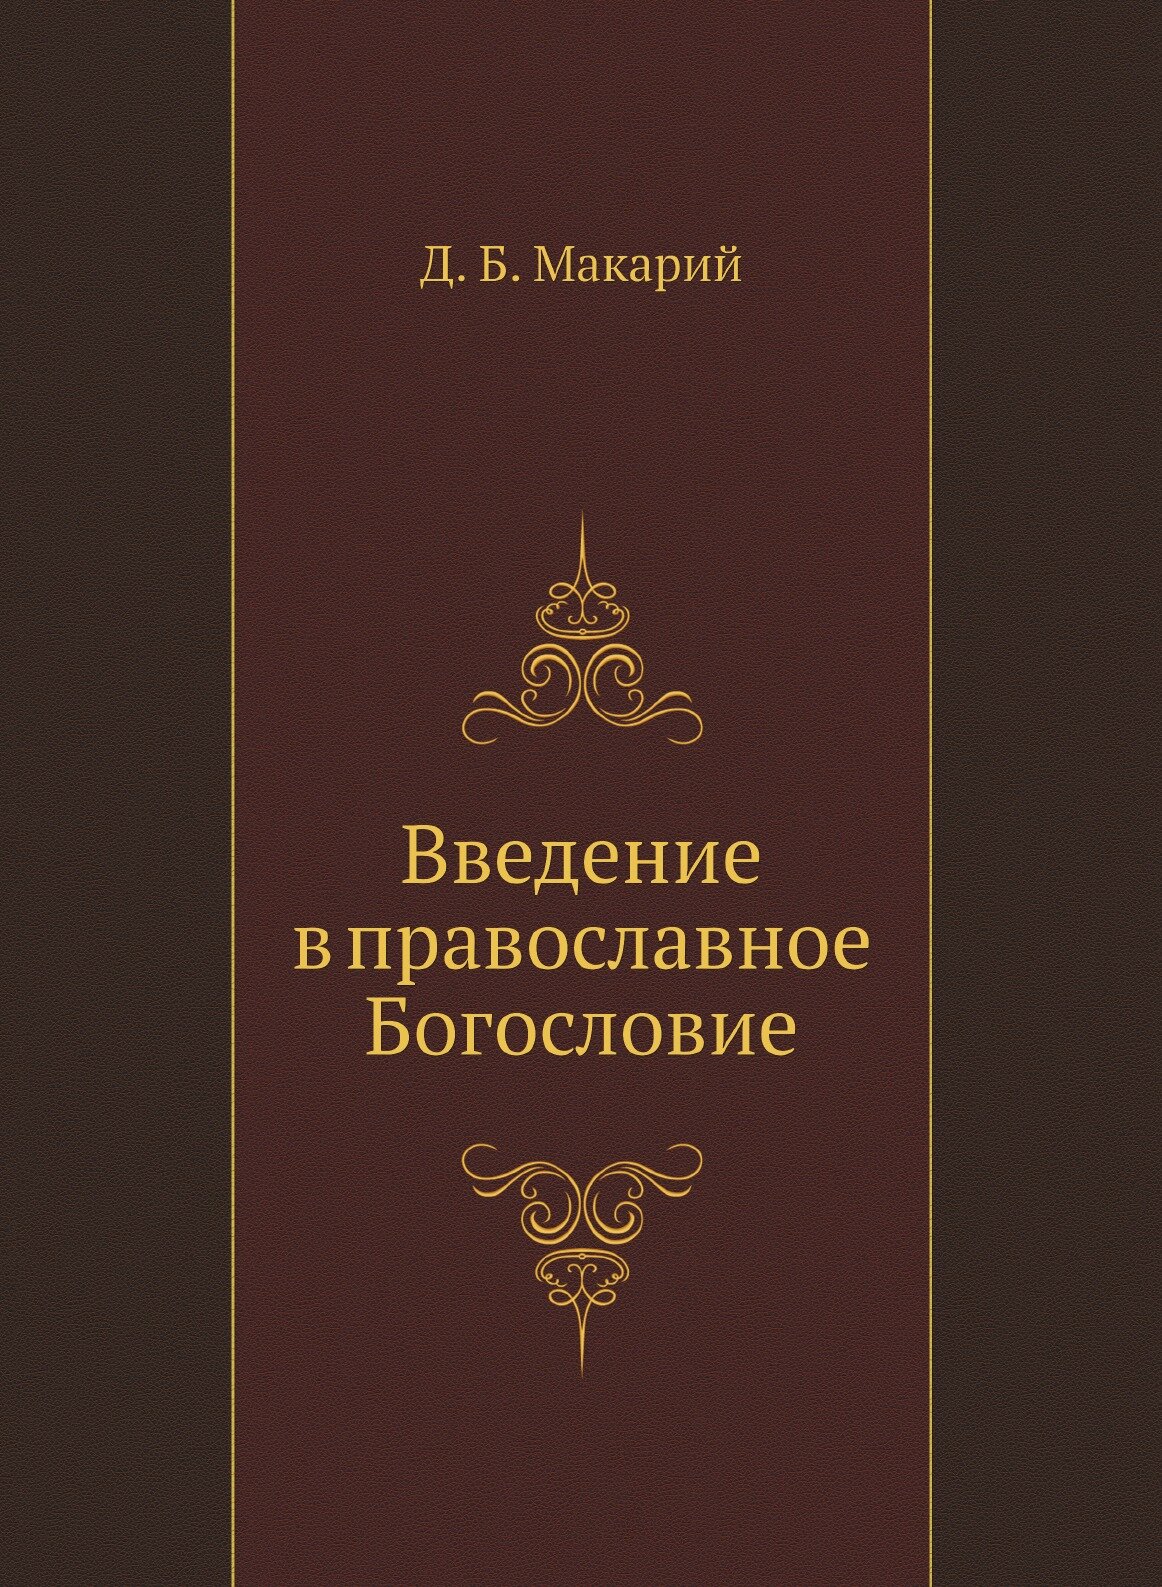 Введение в православное Богословие